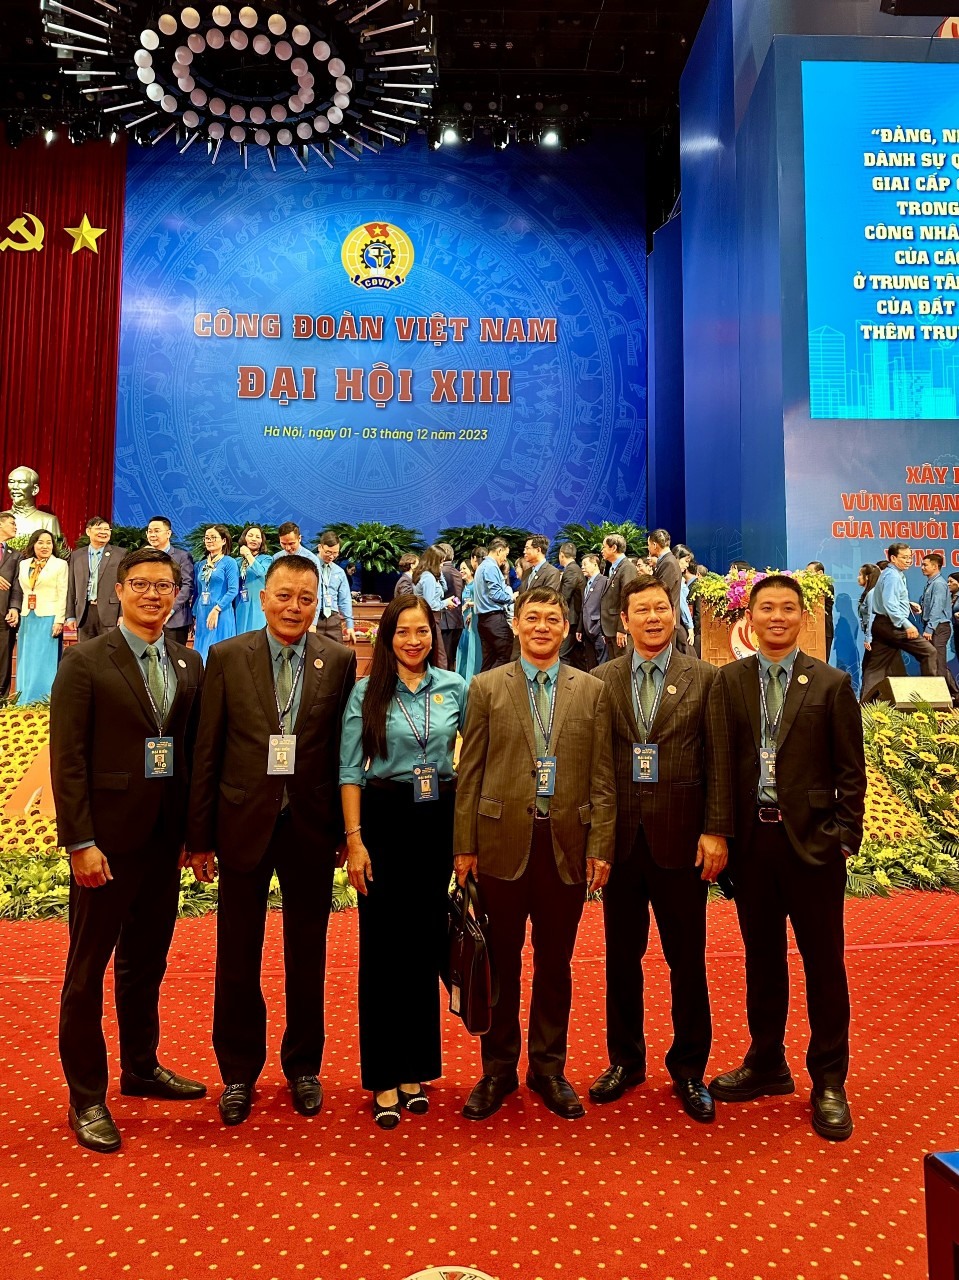 Đoàn đại biểu của Công đoàn Tổng Công ty Hàng không Việt Nam tham dự Đại hội XIII Công đoàn Việt Nam, ông Đào Mạnh Kiên đứng thứ 3 từ phải sang.